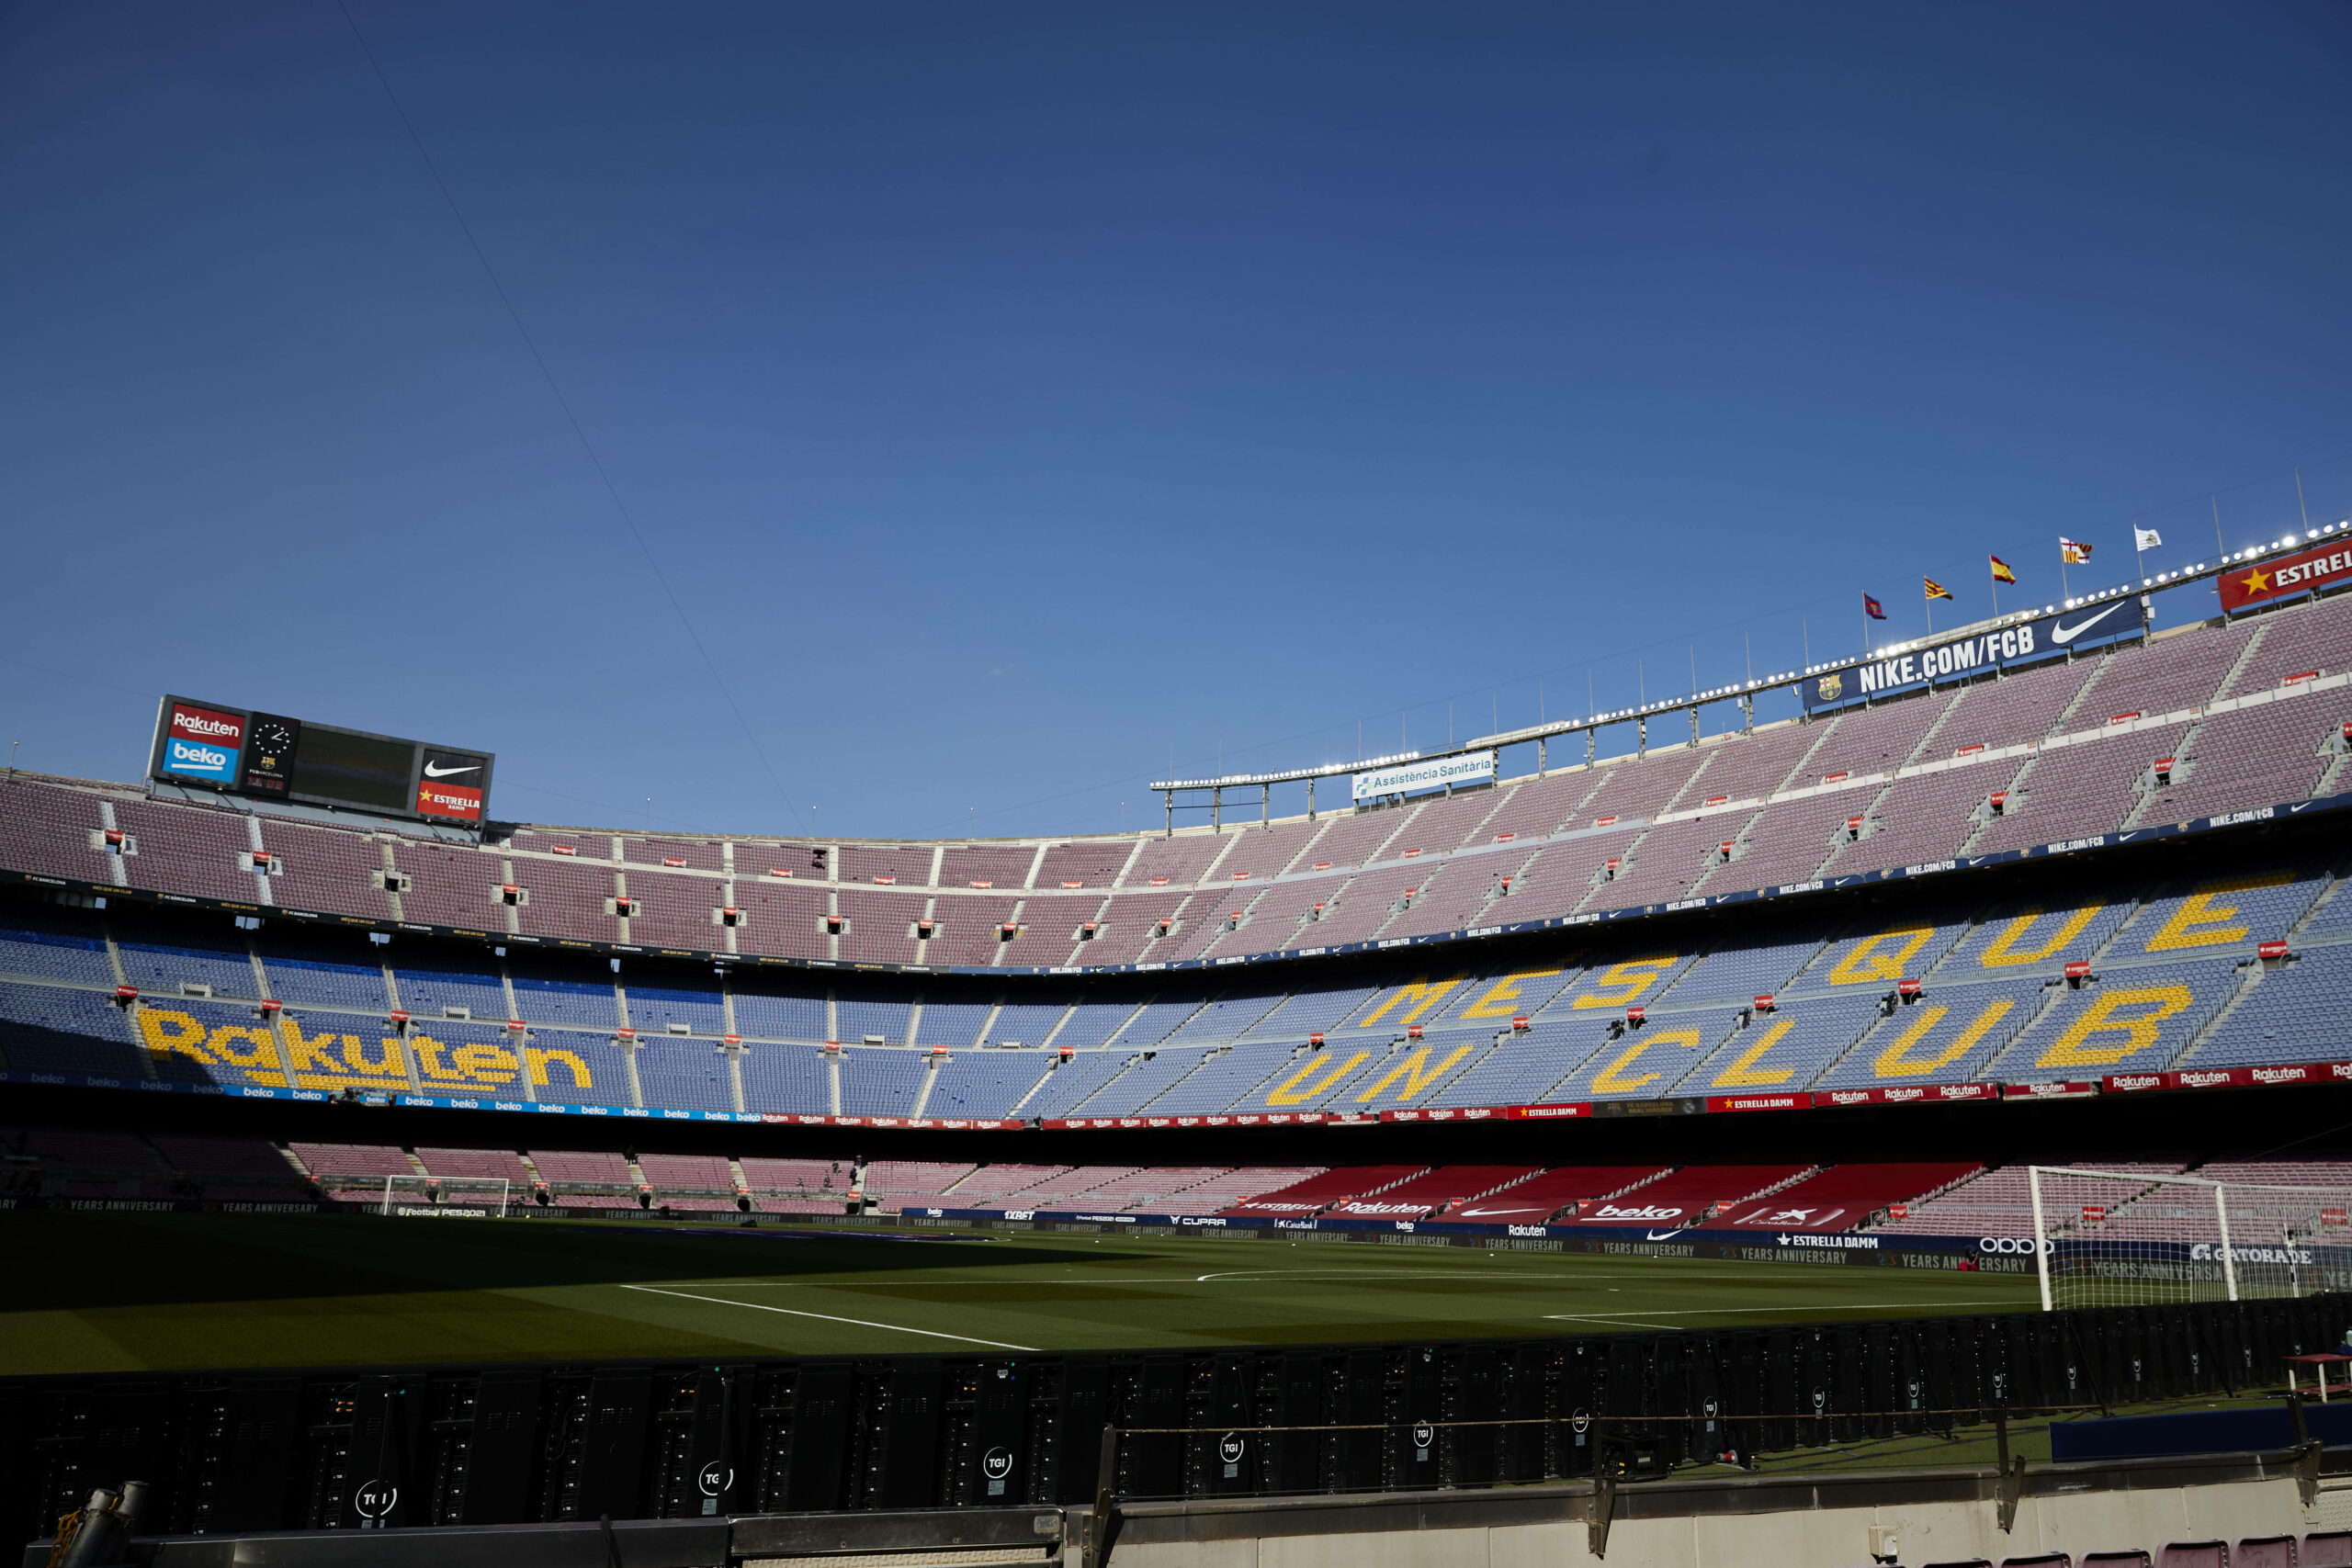 Barcelona und Real Madrid drohen hohe Geldstrafen – Gerichtsprozess geht an EU-Kommission